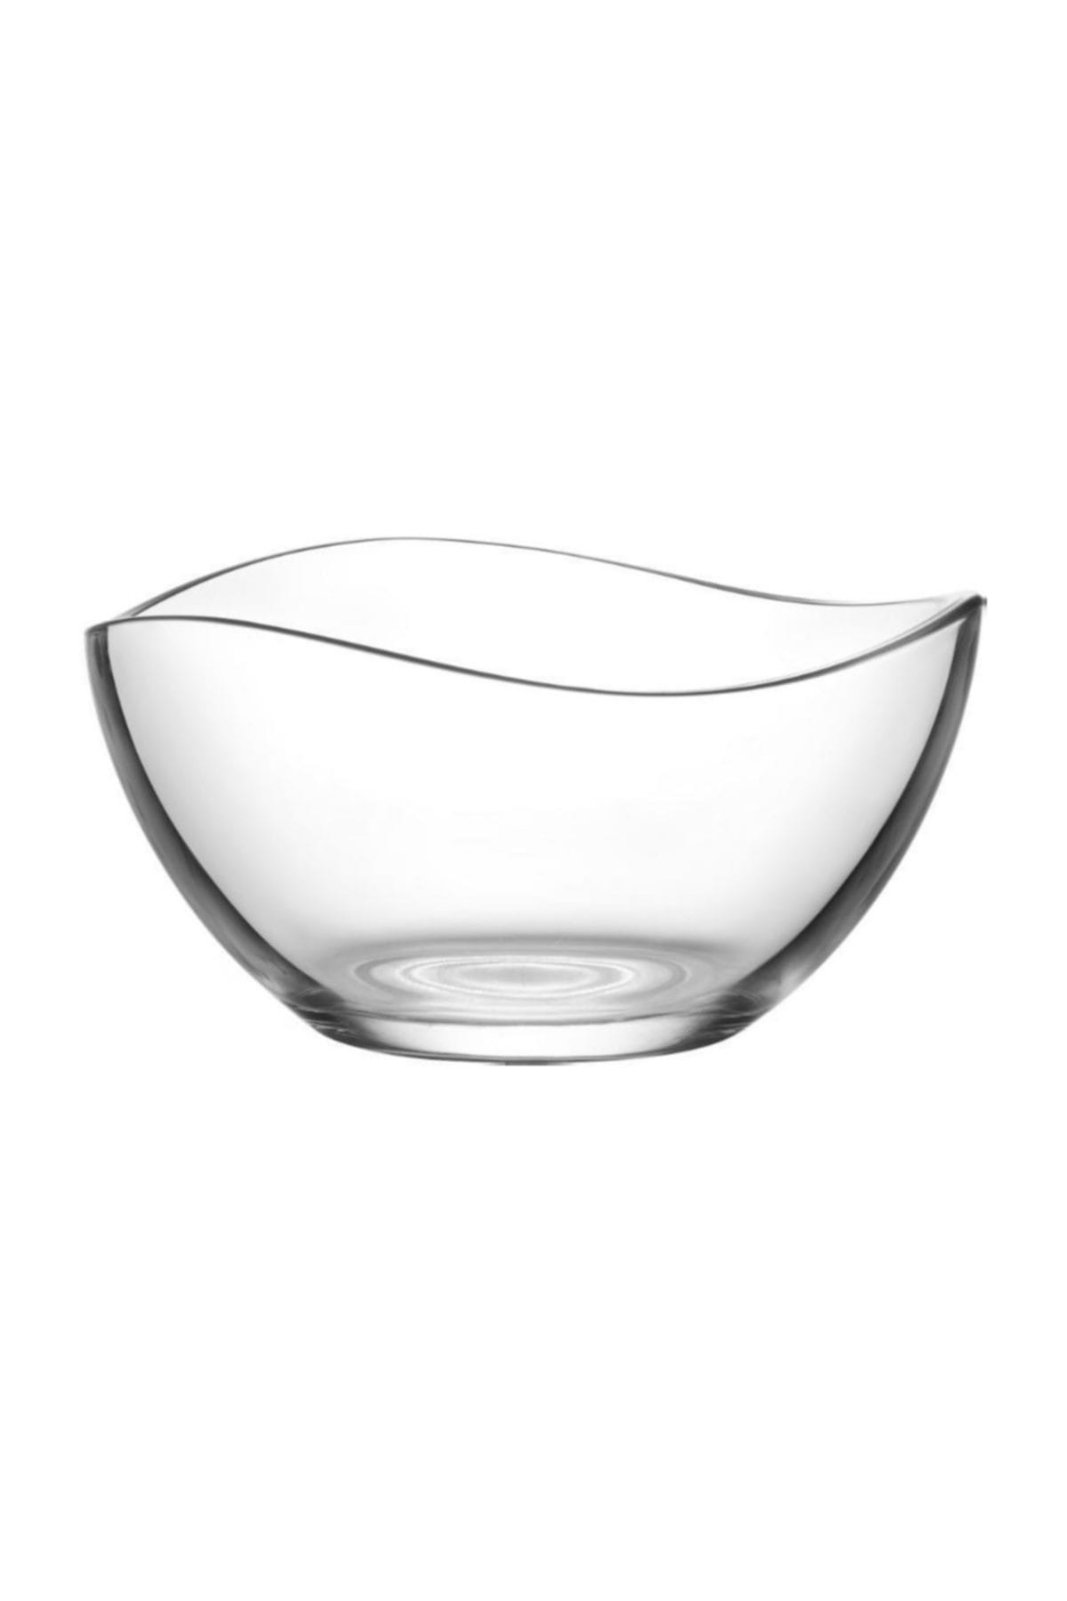 Купа за салата стъкло вълнообразна в кутия LAV №VIR-291R6